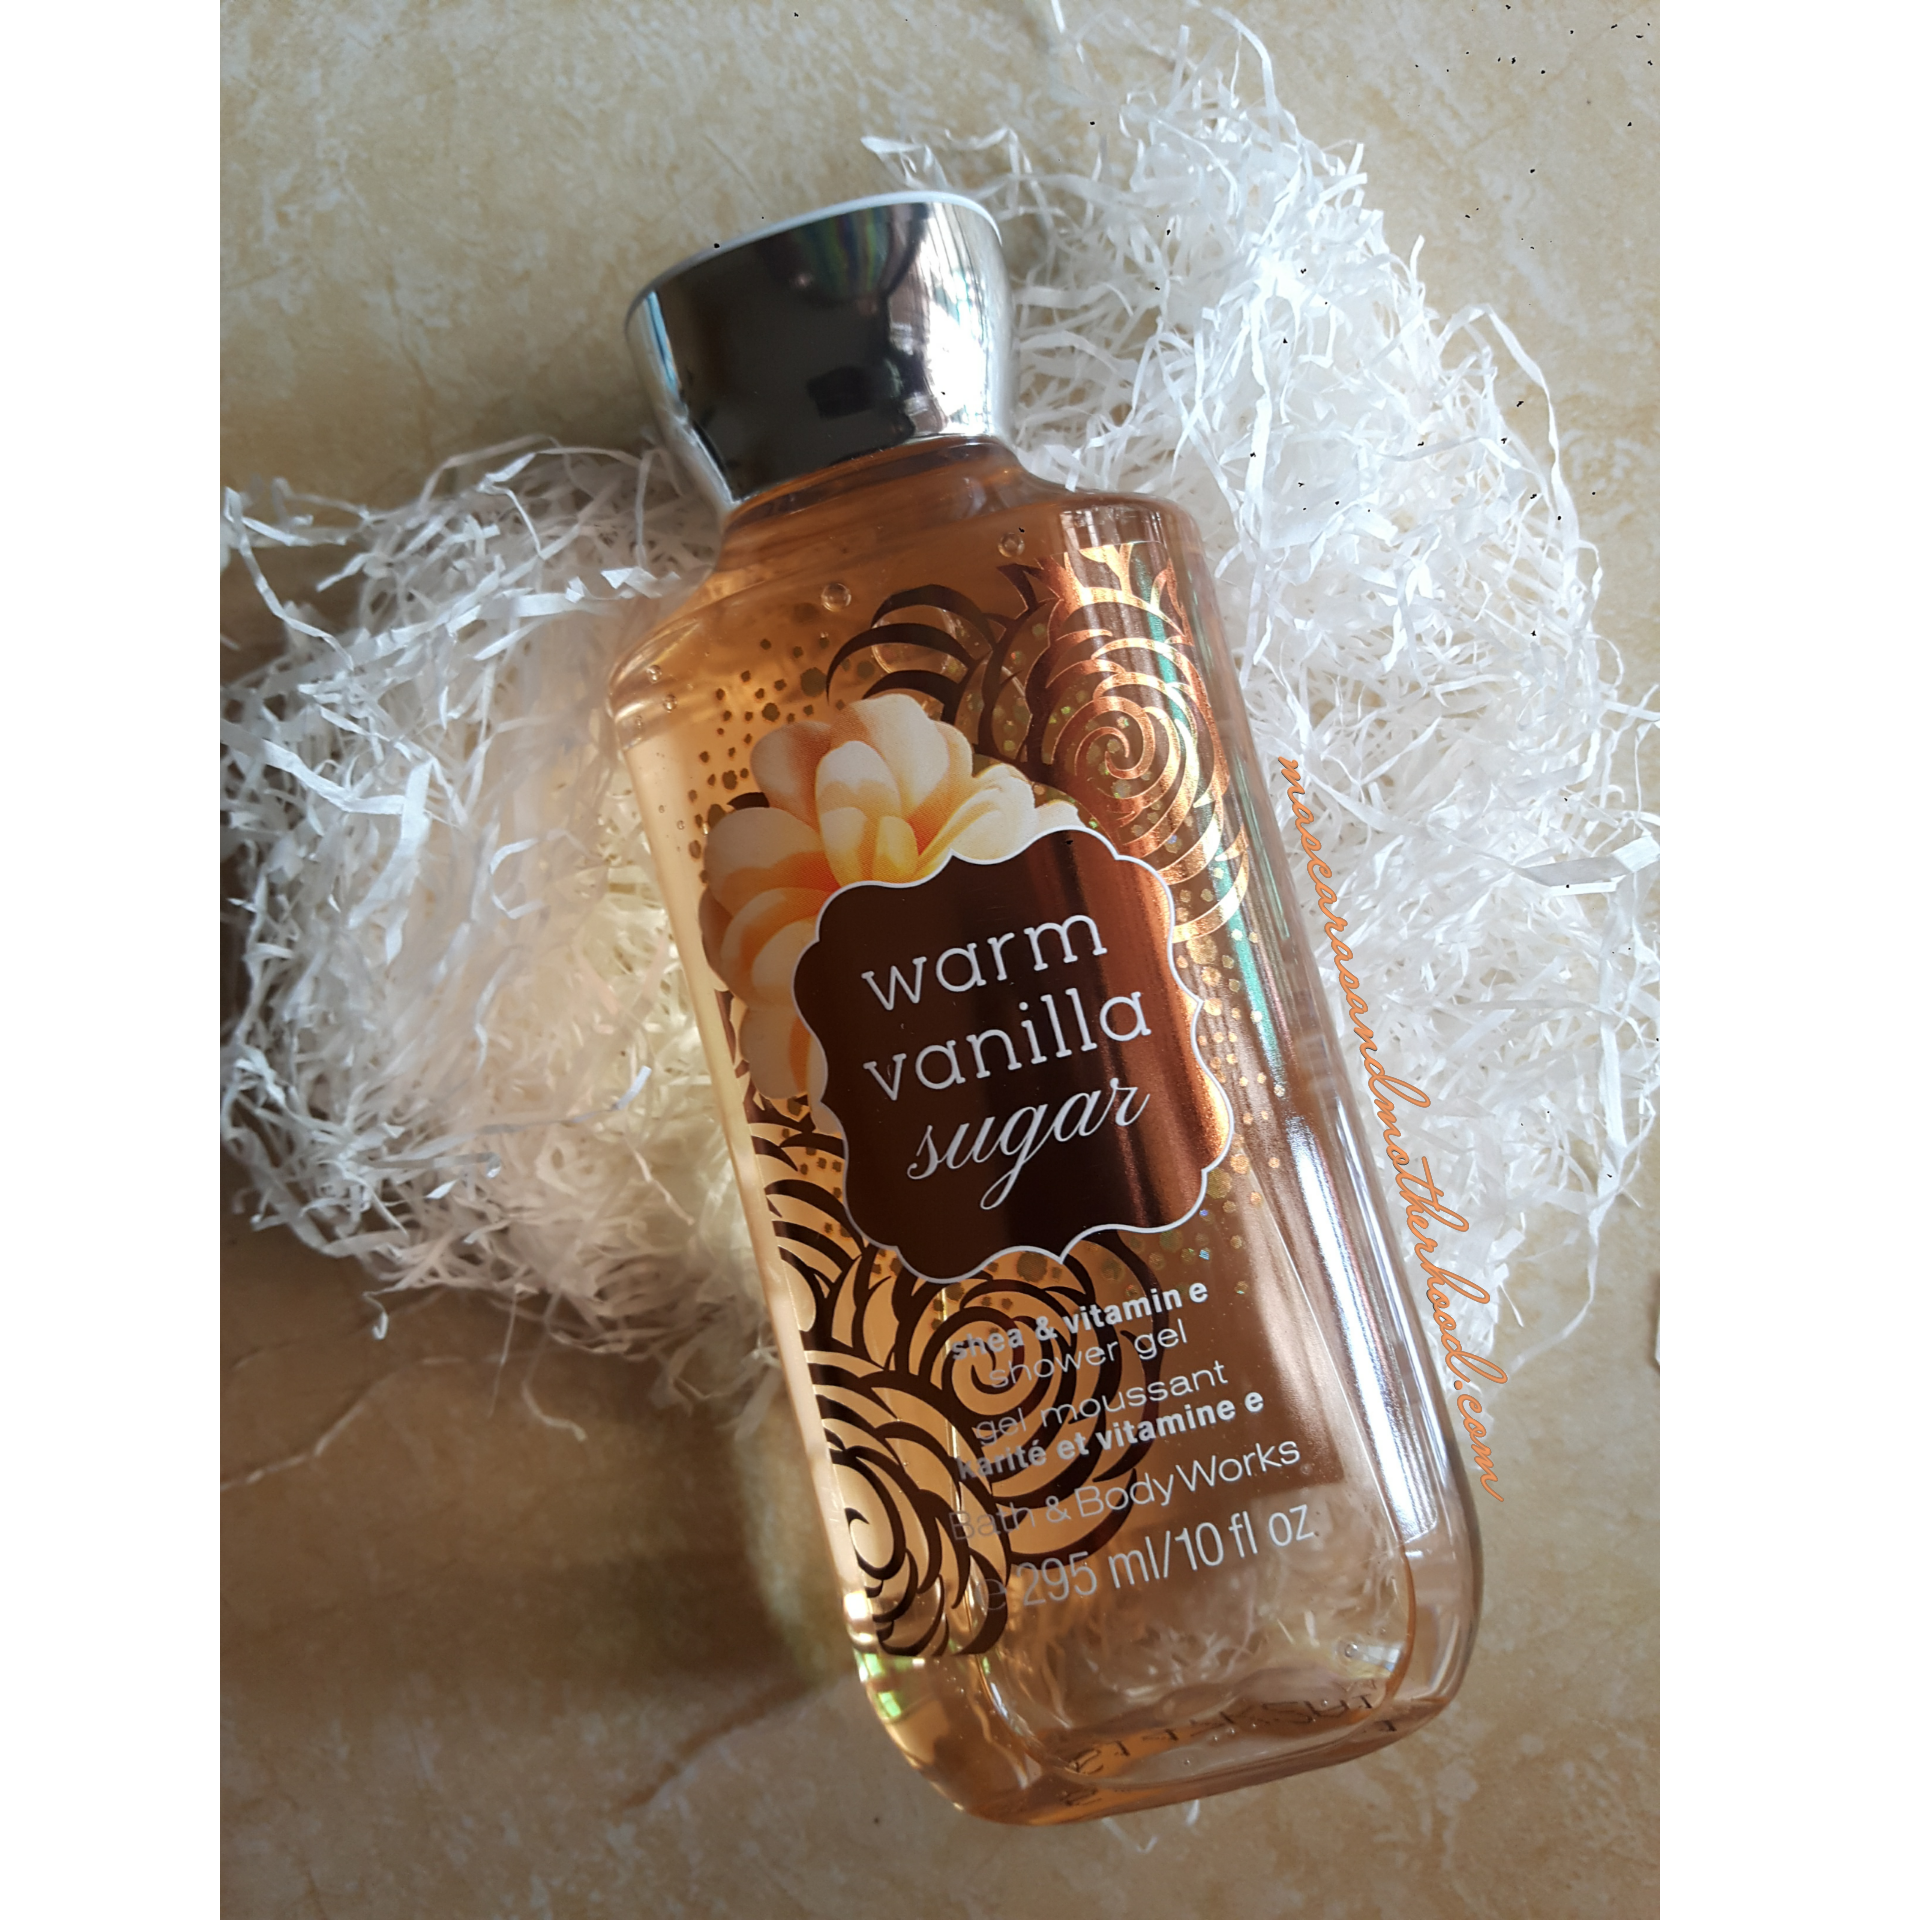 Warm Vanilla Sugar by Bath & Body Works Fine Fragrance Mist Review